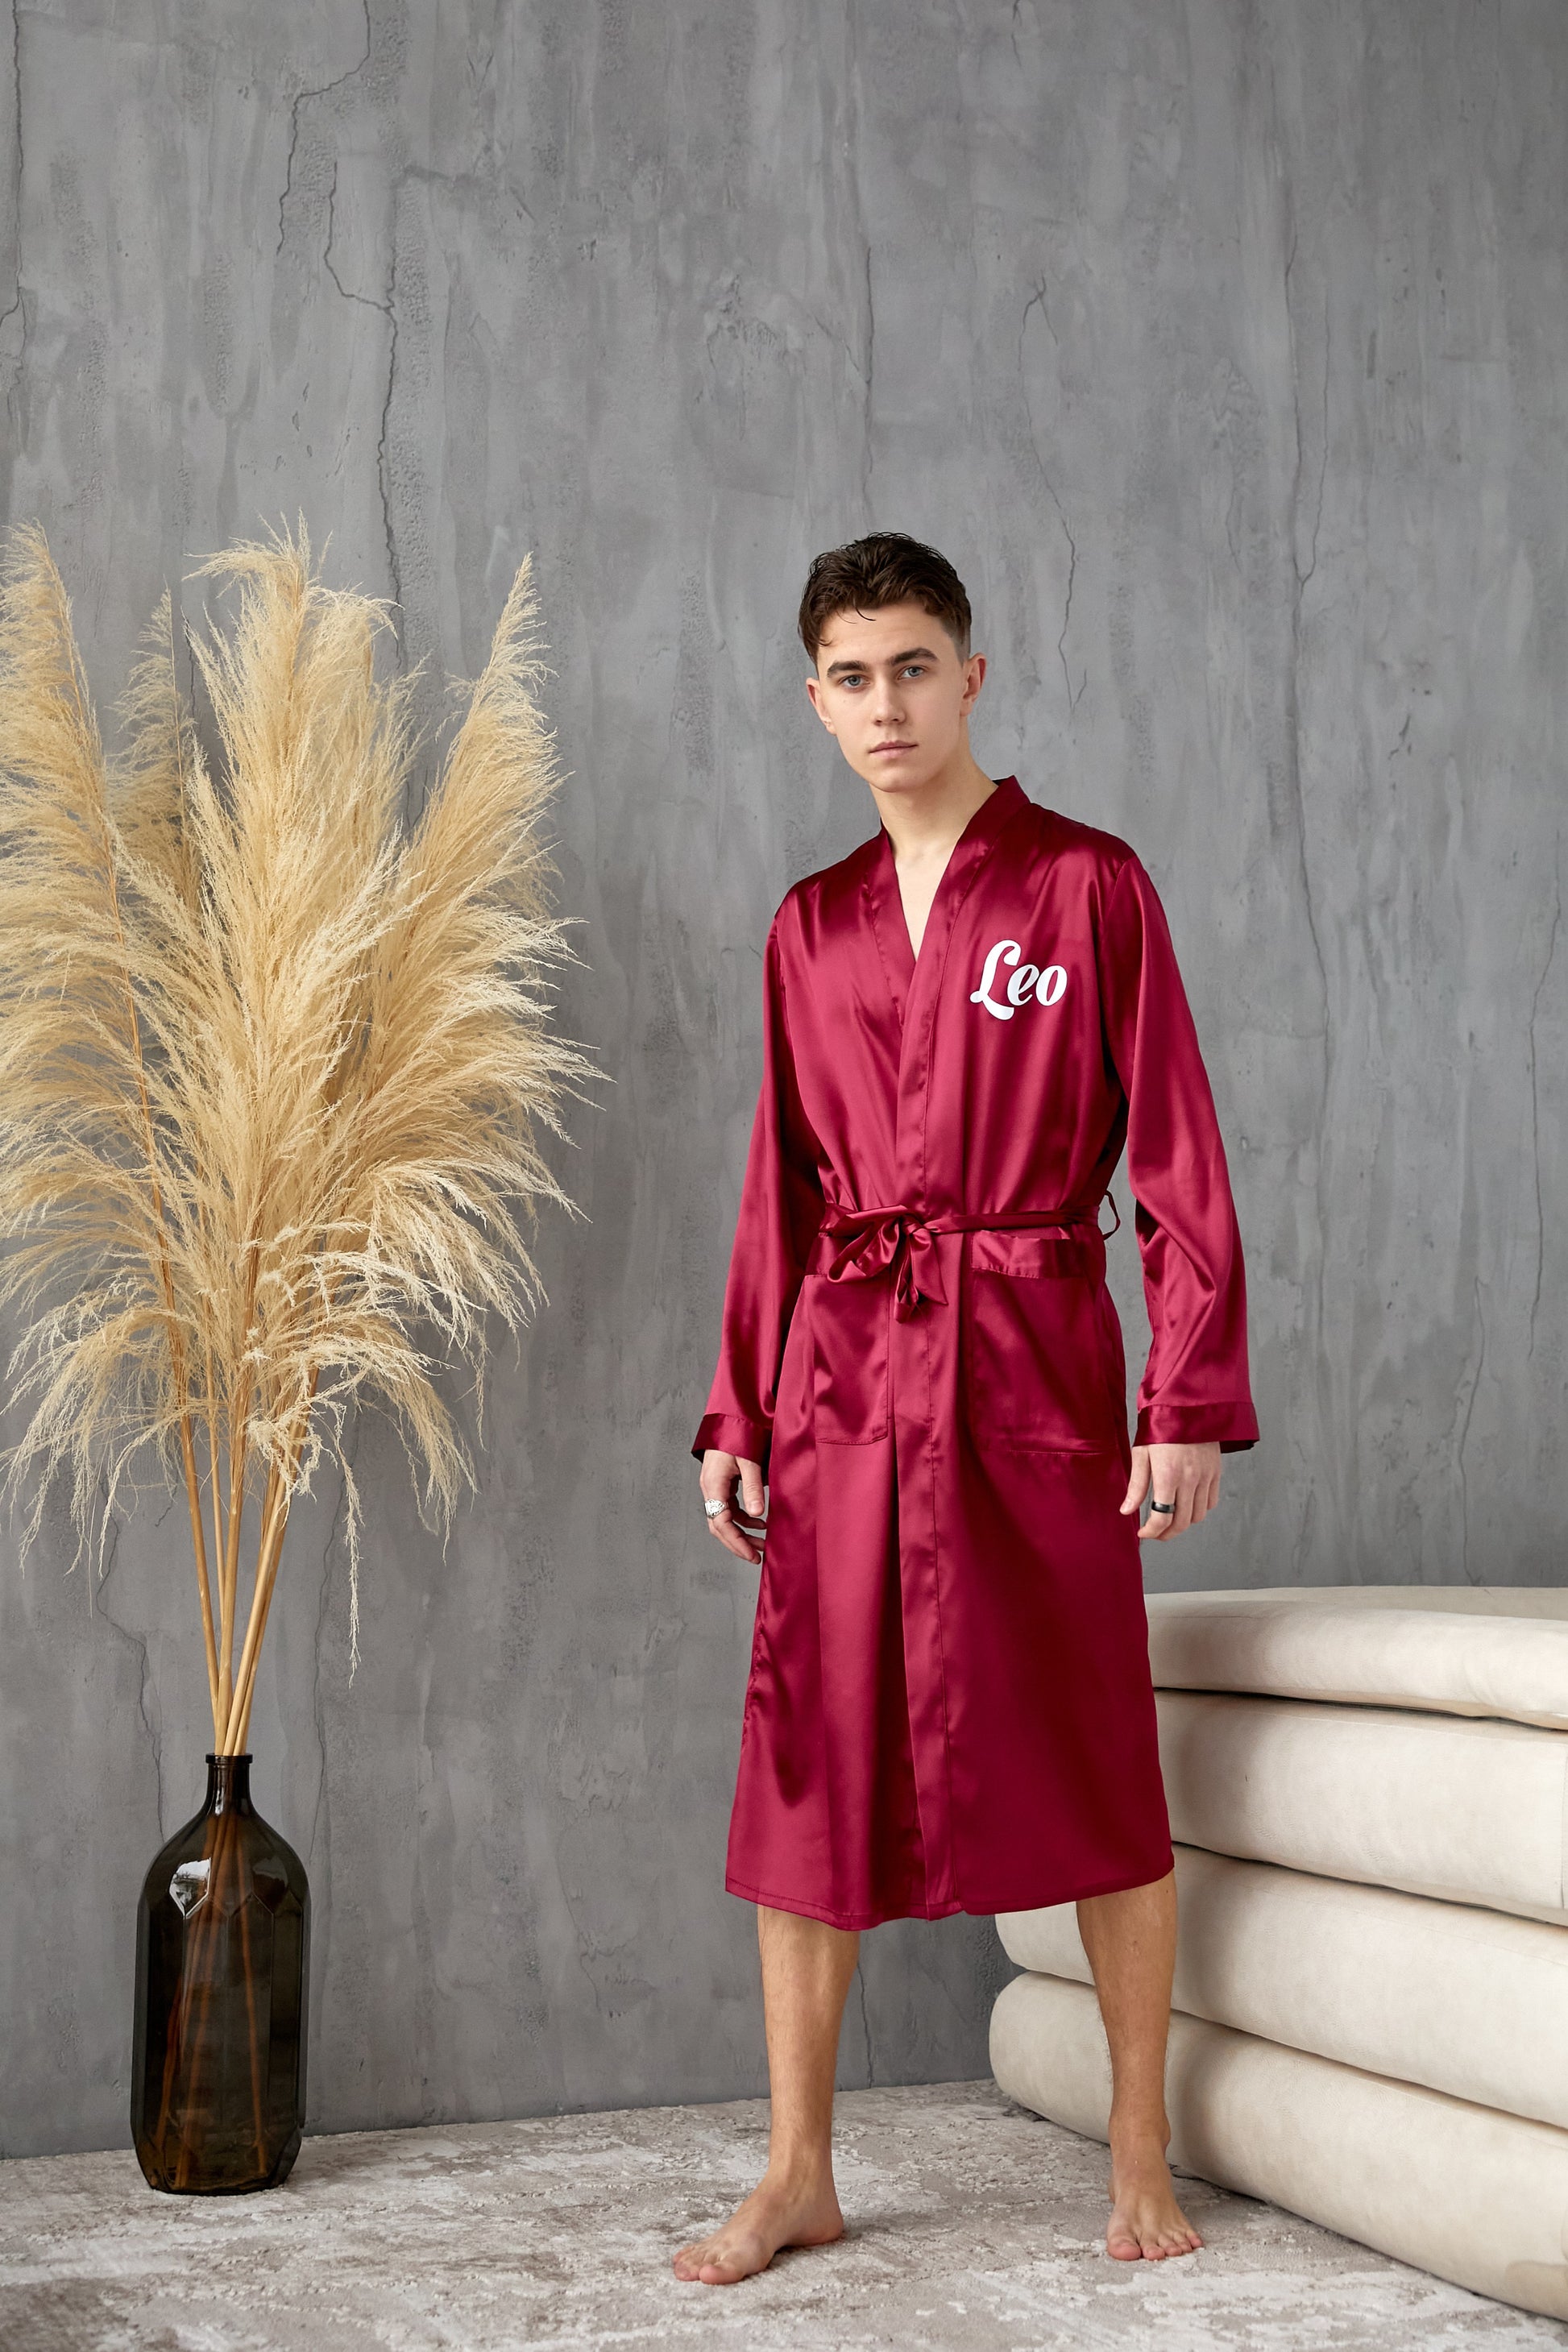 Scri Men's Custom Satin Robe